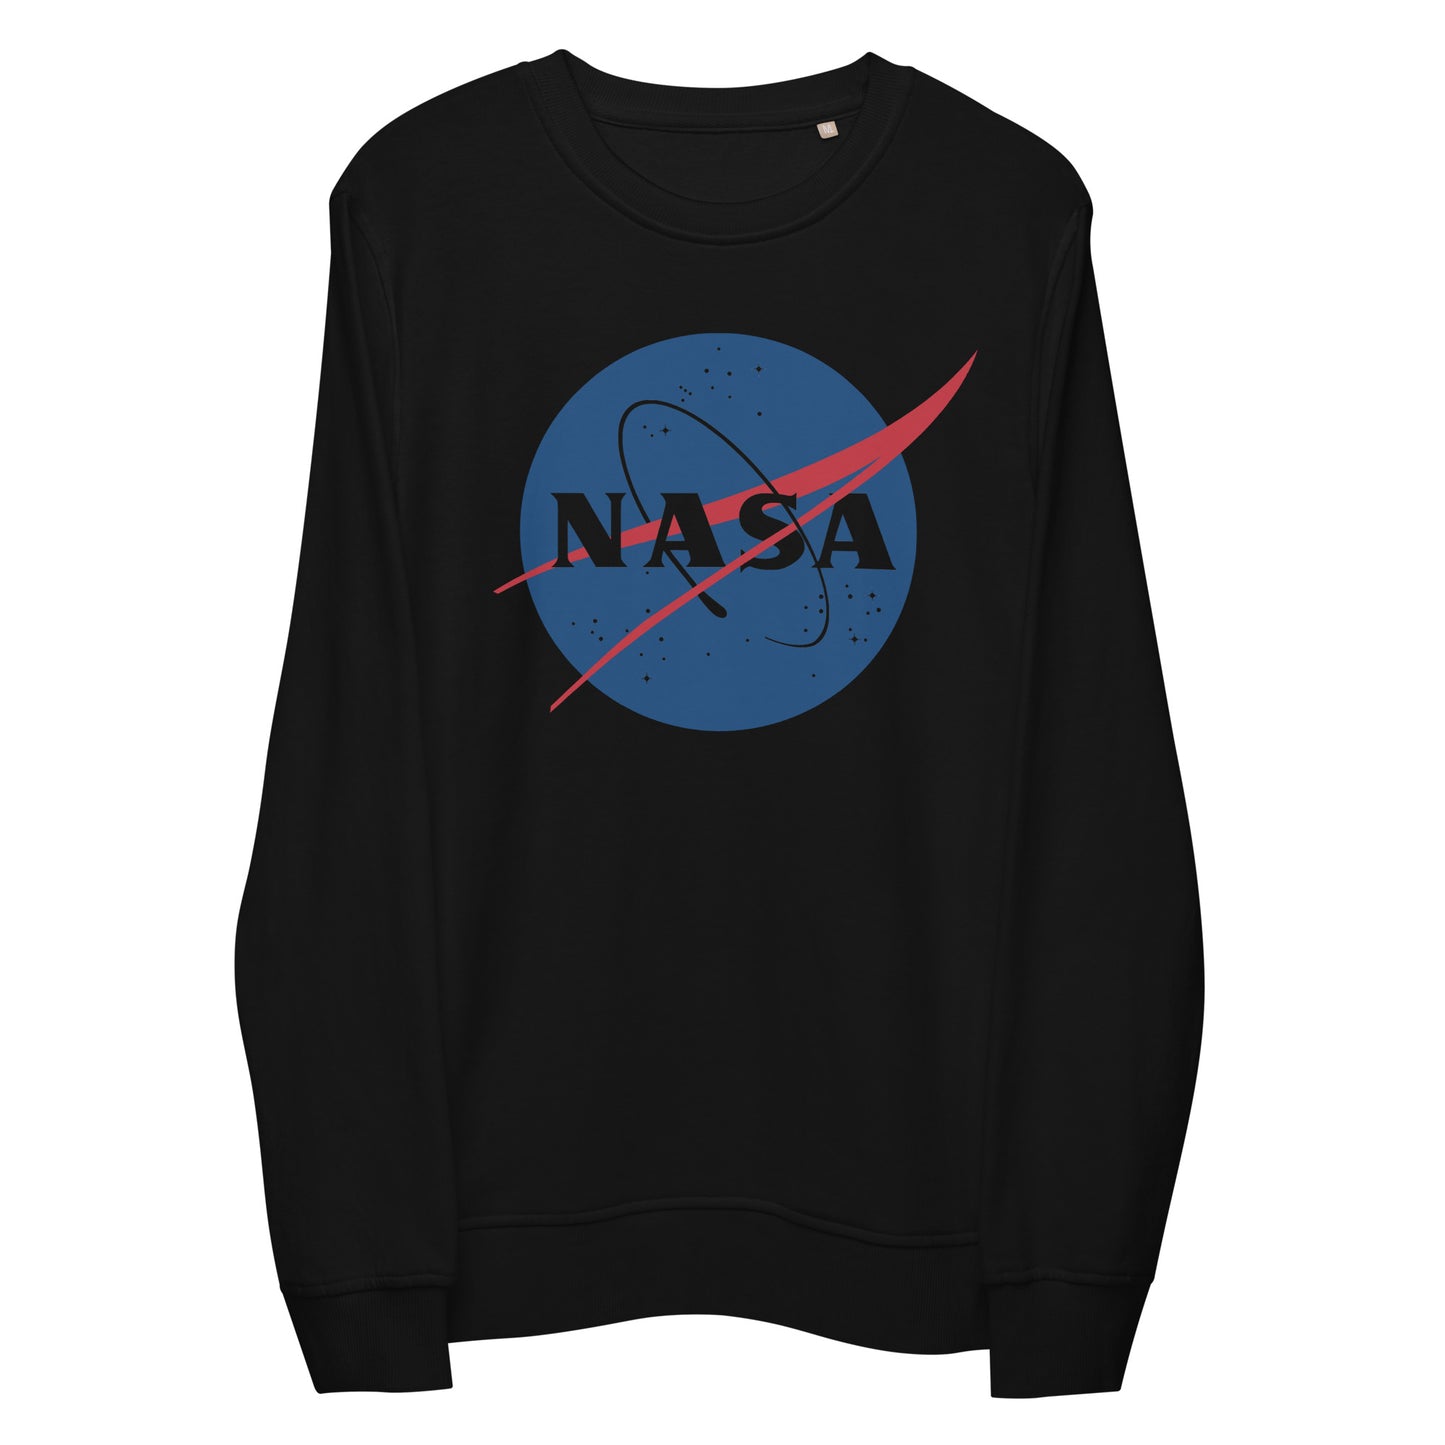 NASA Unisex Crewneck Sweatshirt